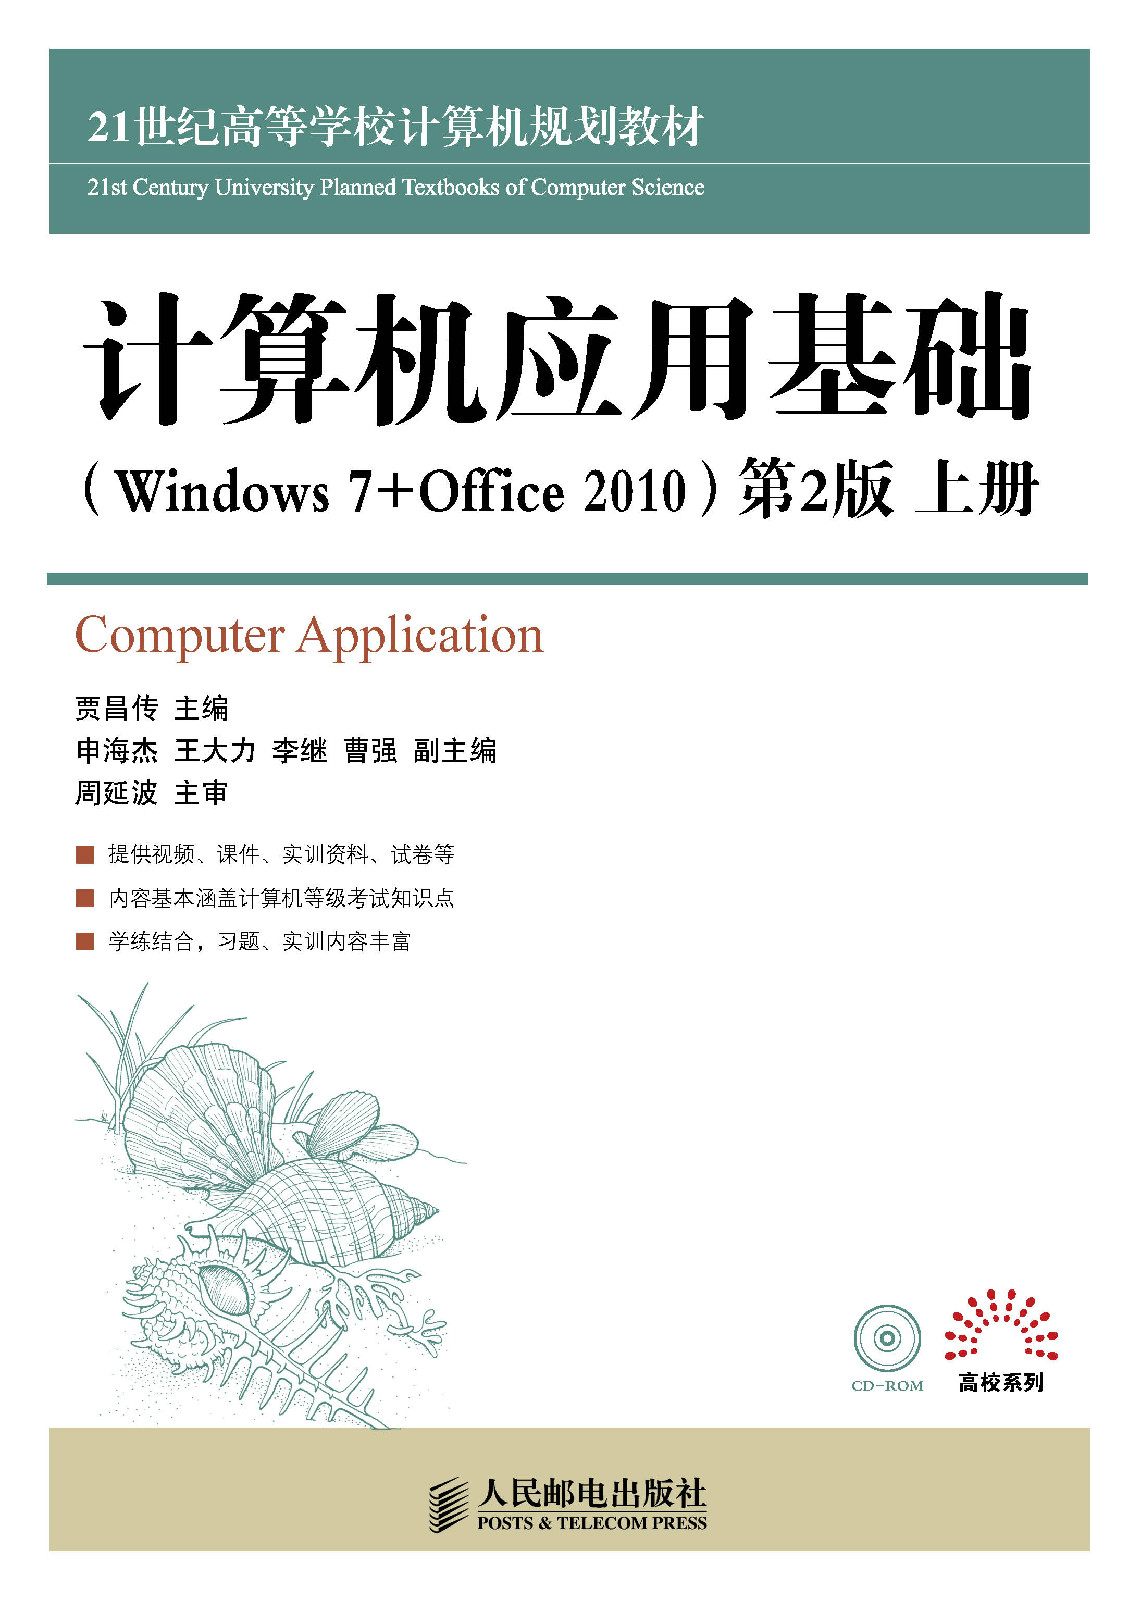 計算機套用基礎(Windows 7+Office 2010)